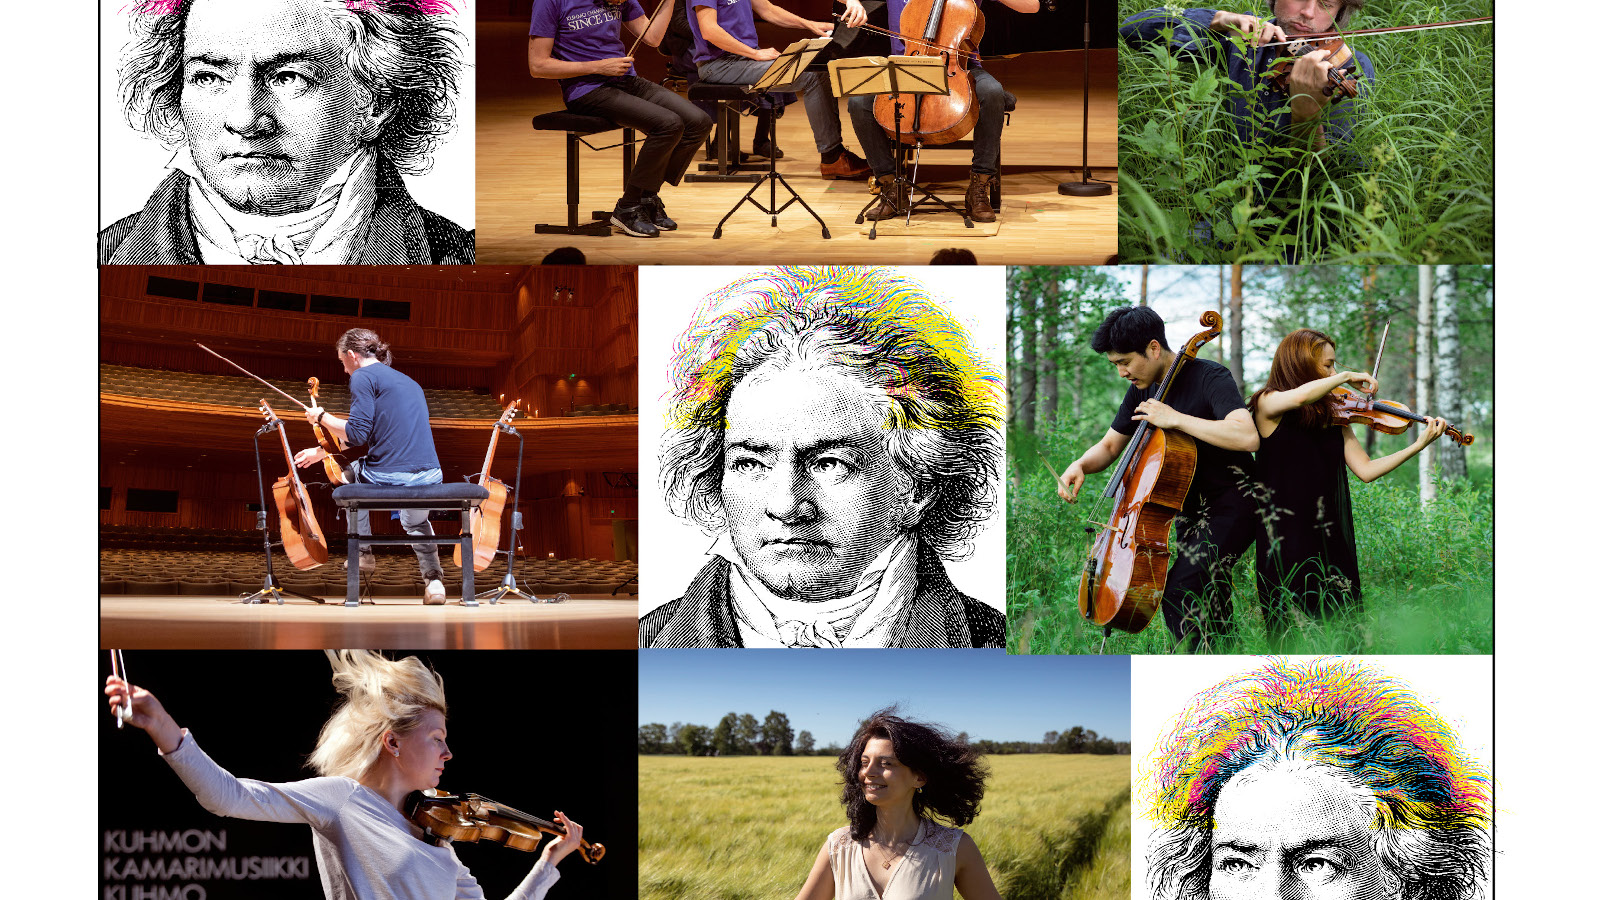 Kuhmon Kamarimusiikin Beethoven-teemaista tunnelmaa 11.–24.7.2021. 